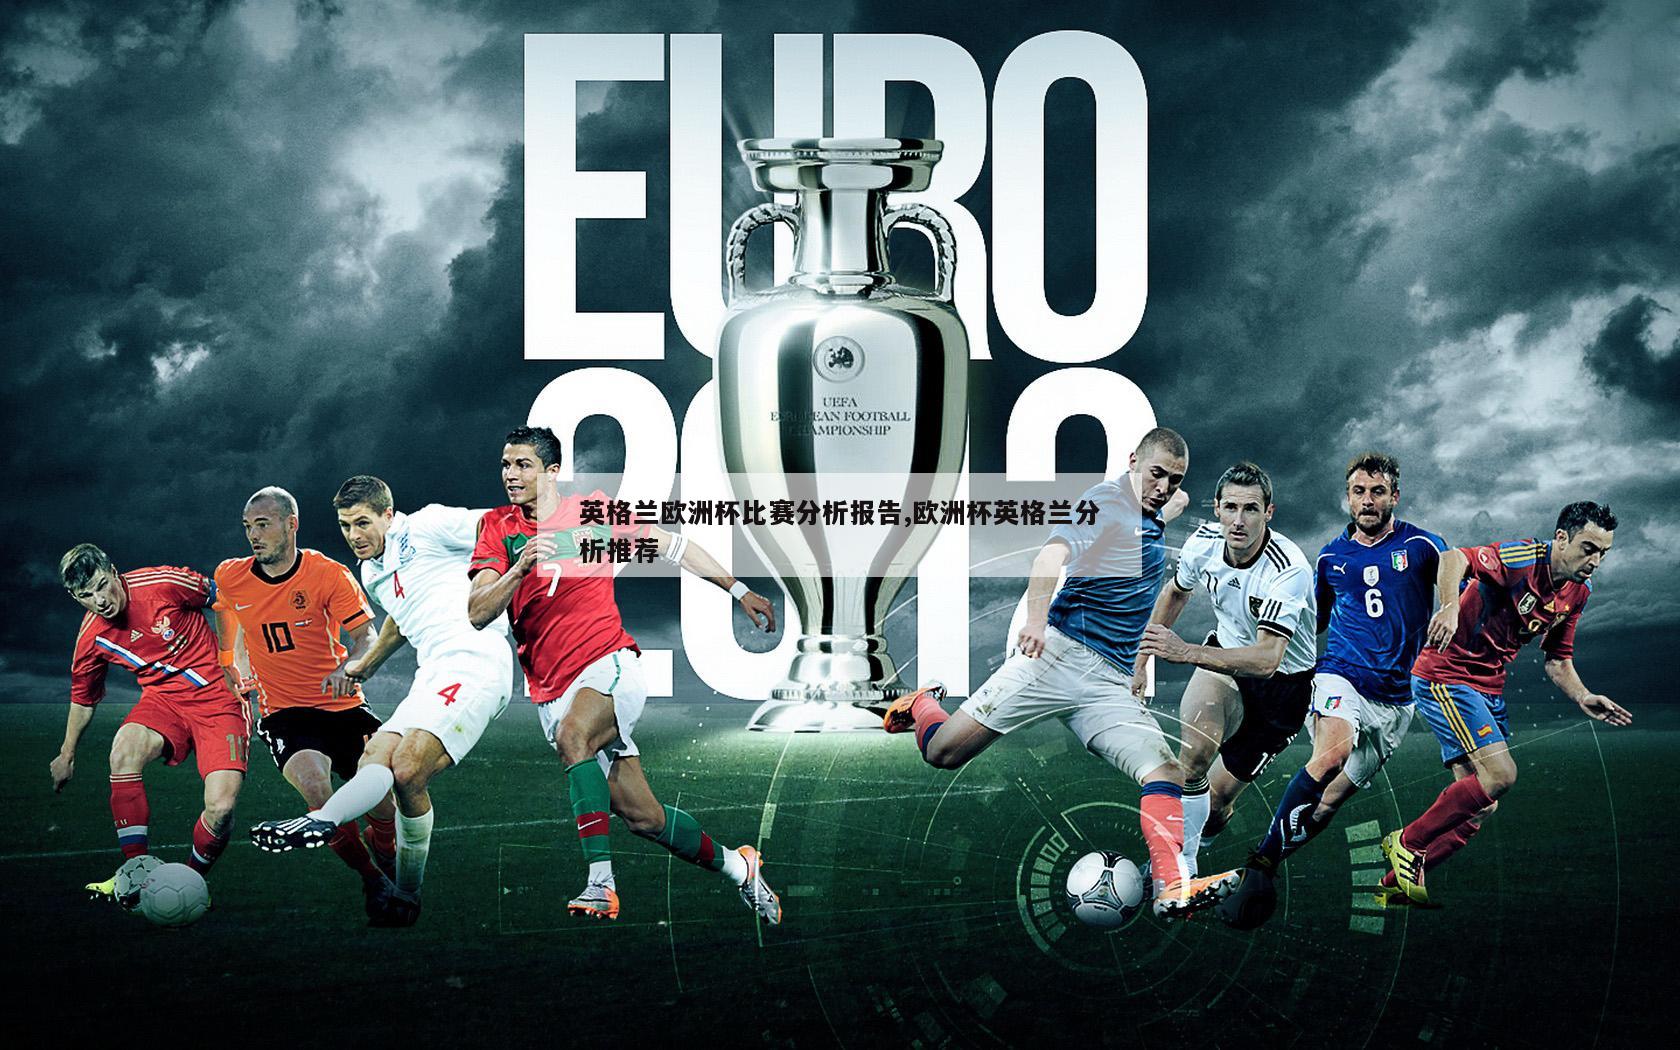 英格兰欧洲杯比赛分析报告,欧洲杯英格兰分析推荐